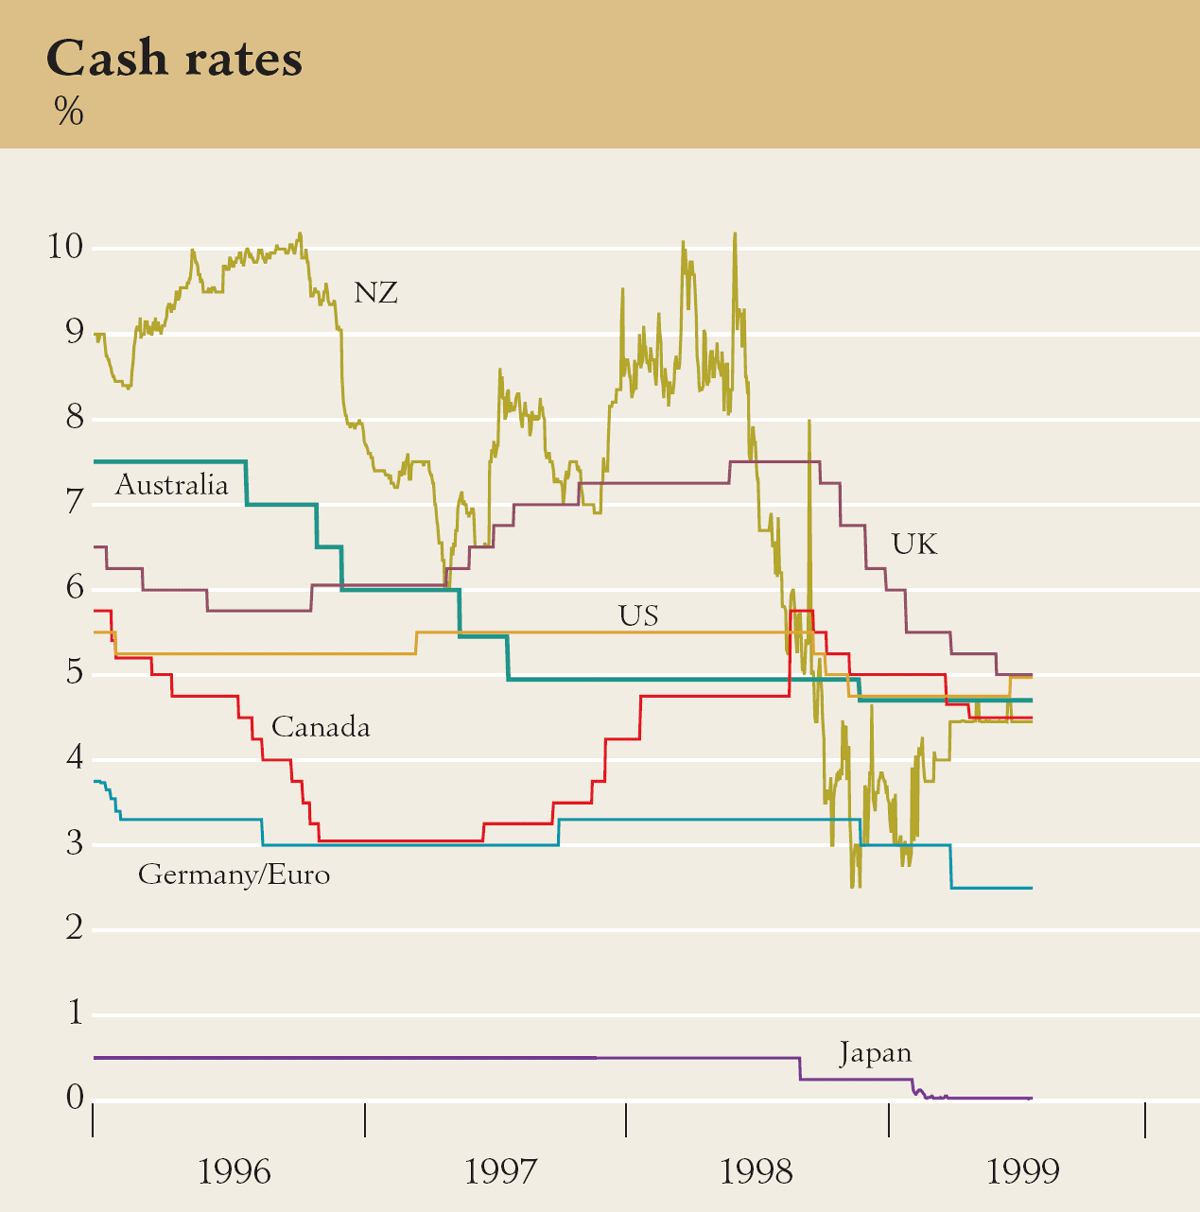 Graph showing Cash rates